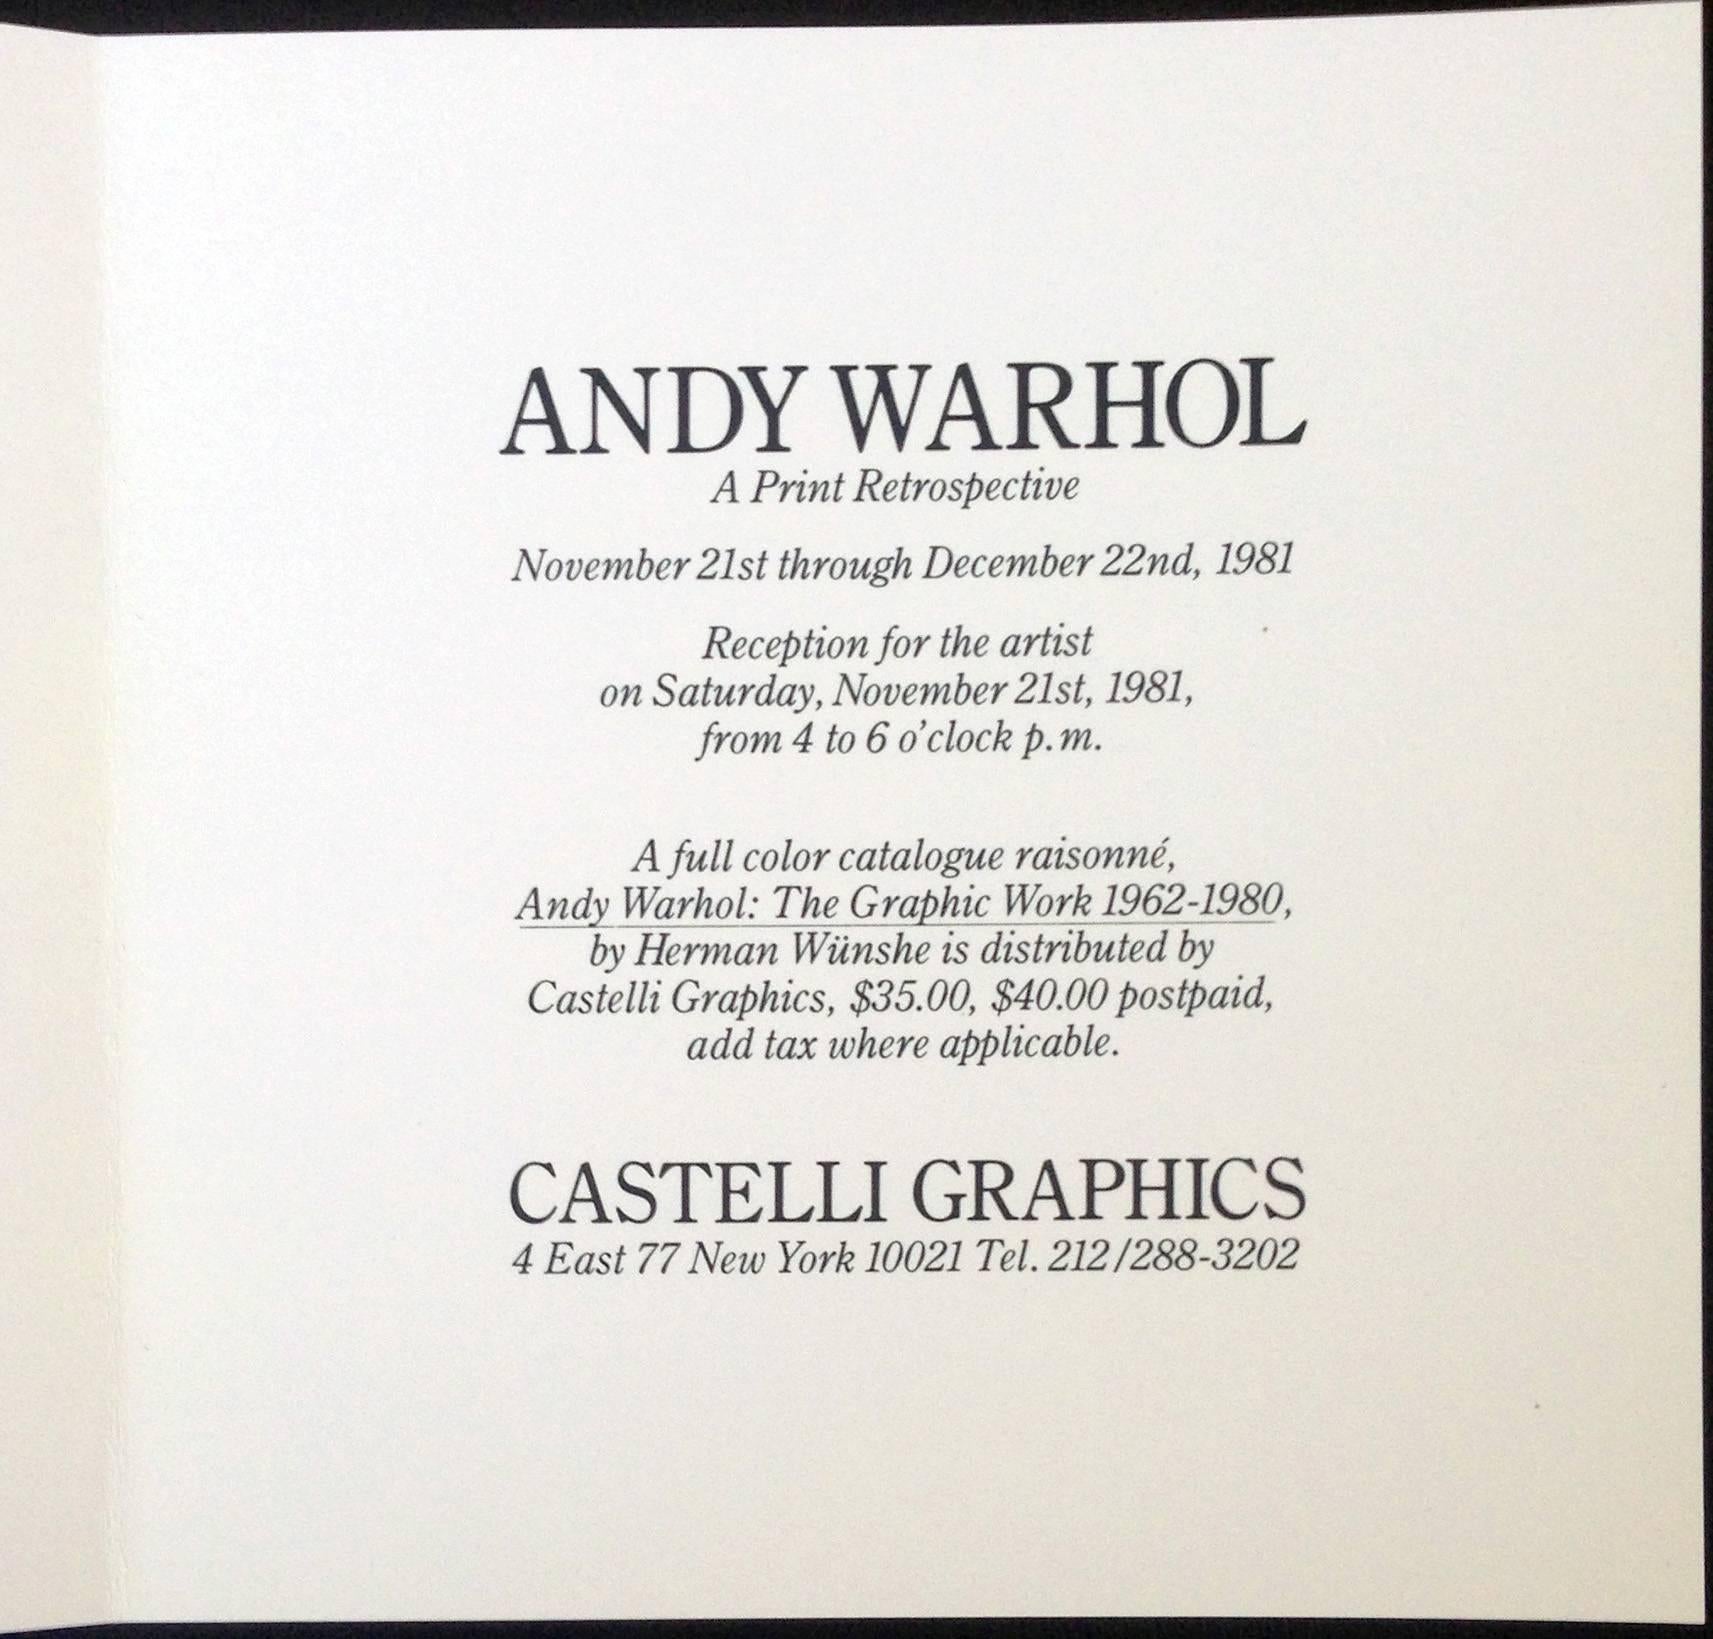 Warhol Marilyn (Castelli Invitation) - Pop Art Print by (after) Andy Warhol